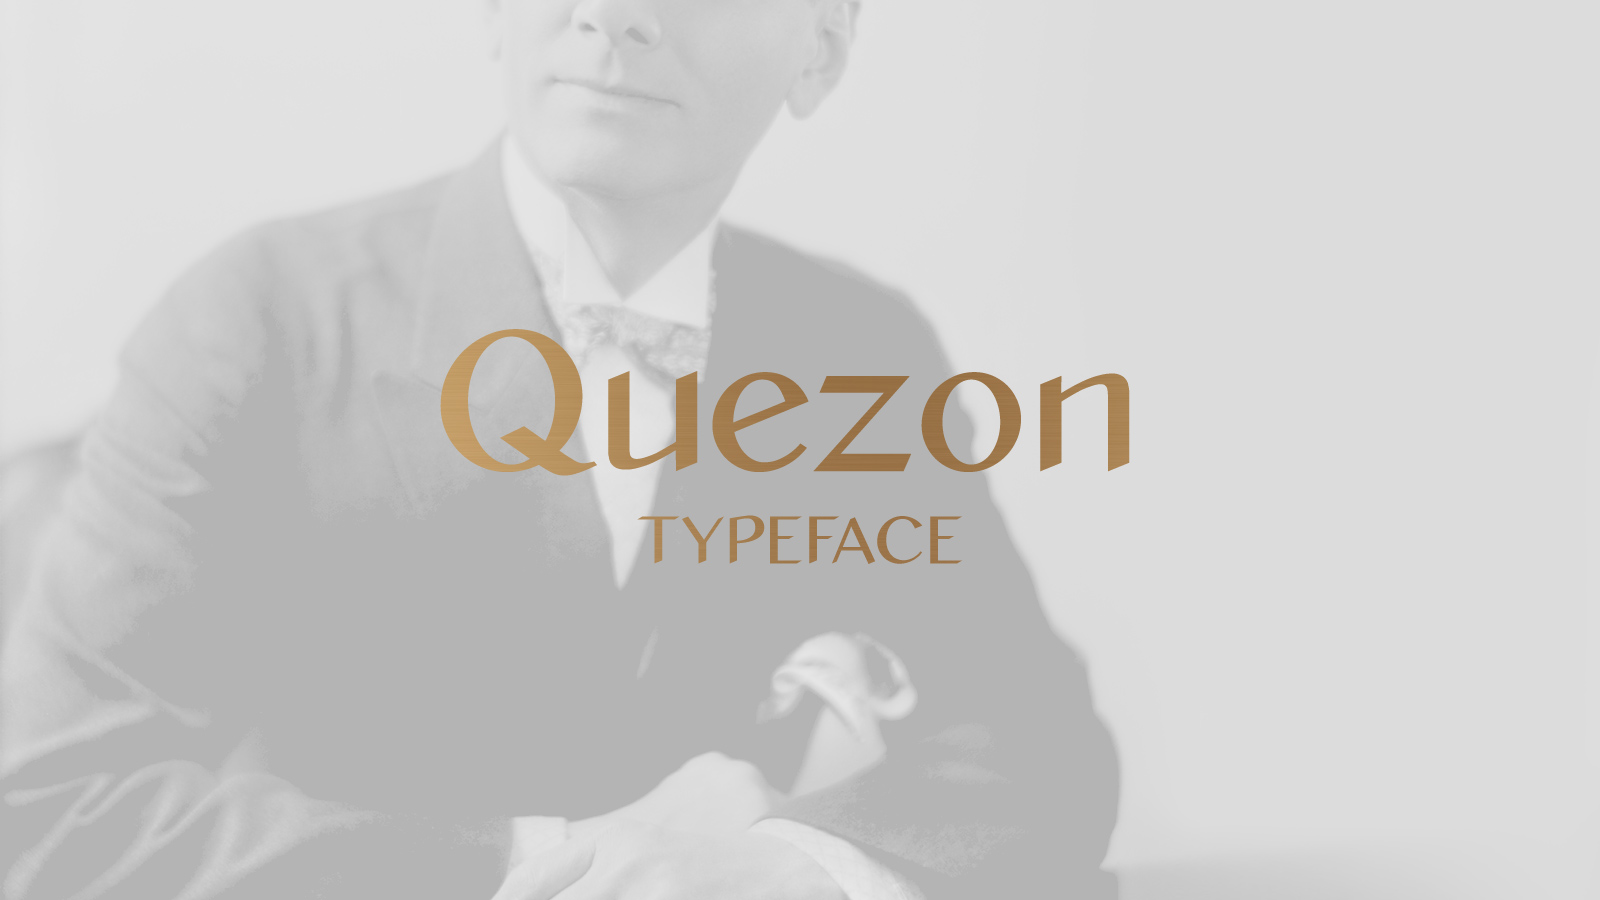 Quezon Typeface